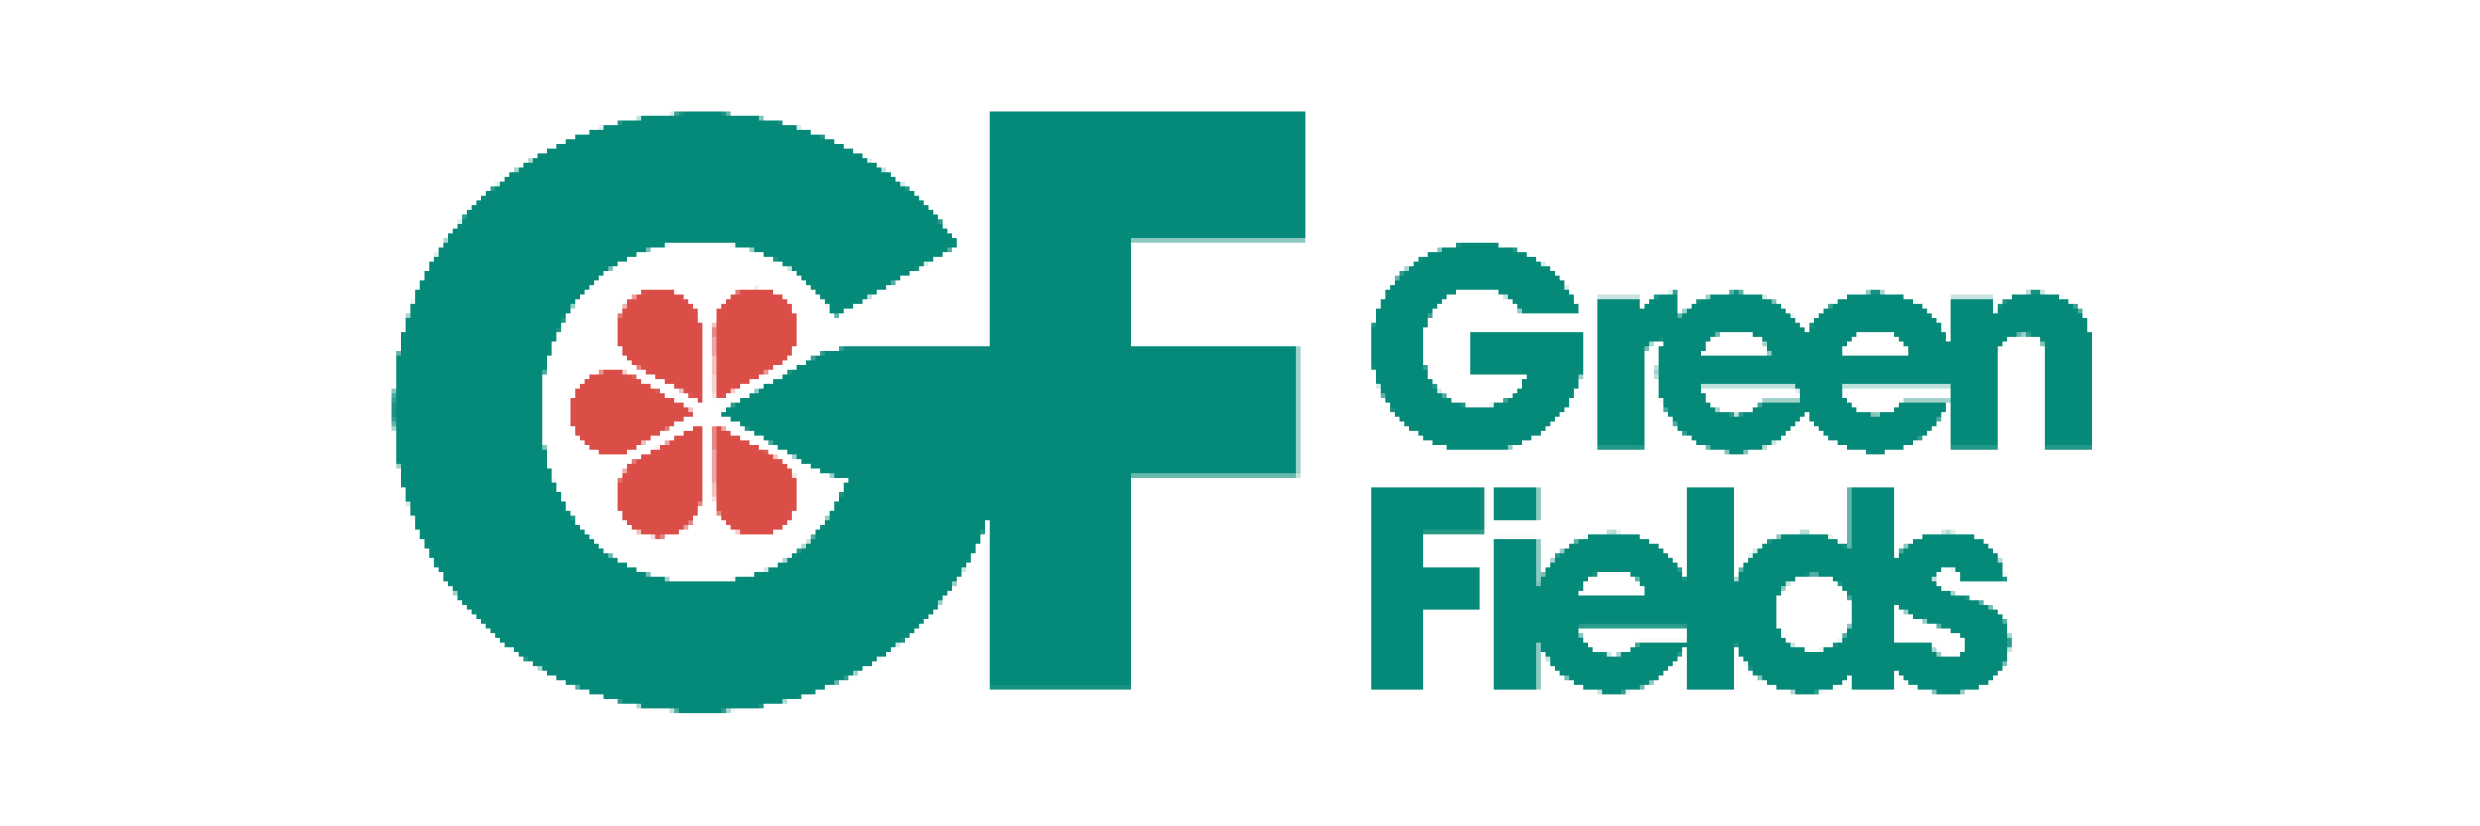 Greenfields – Langfristige, monatsgenaue rollierende Prognose für 12 Monate